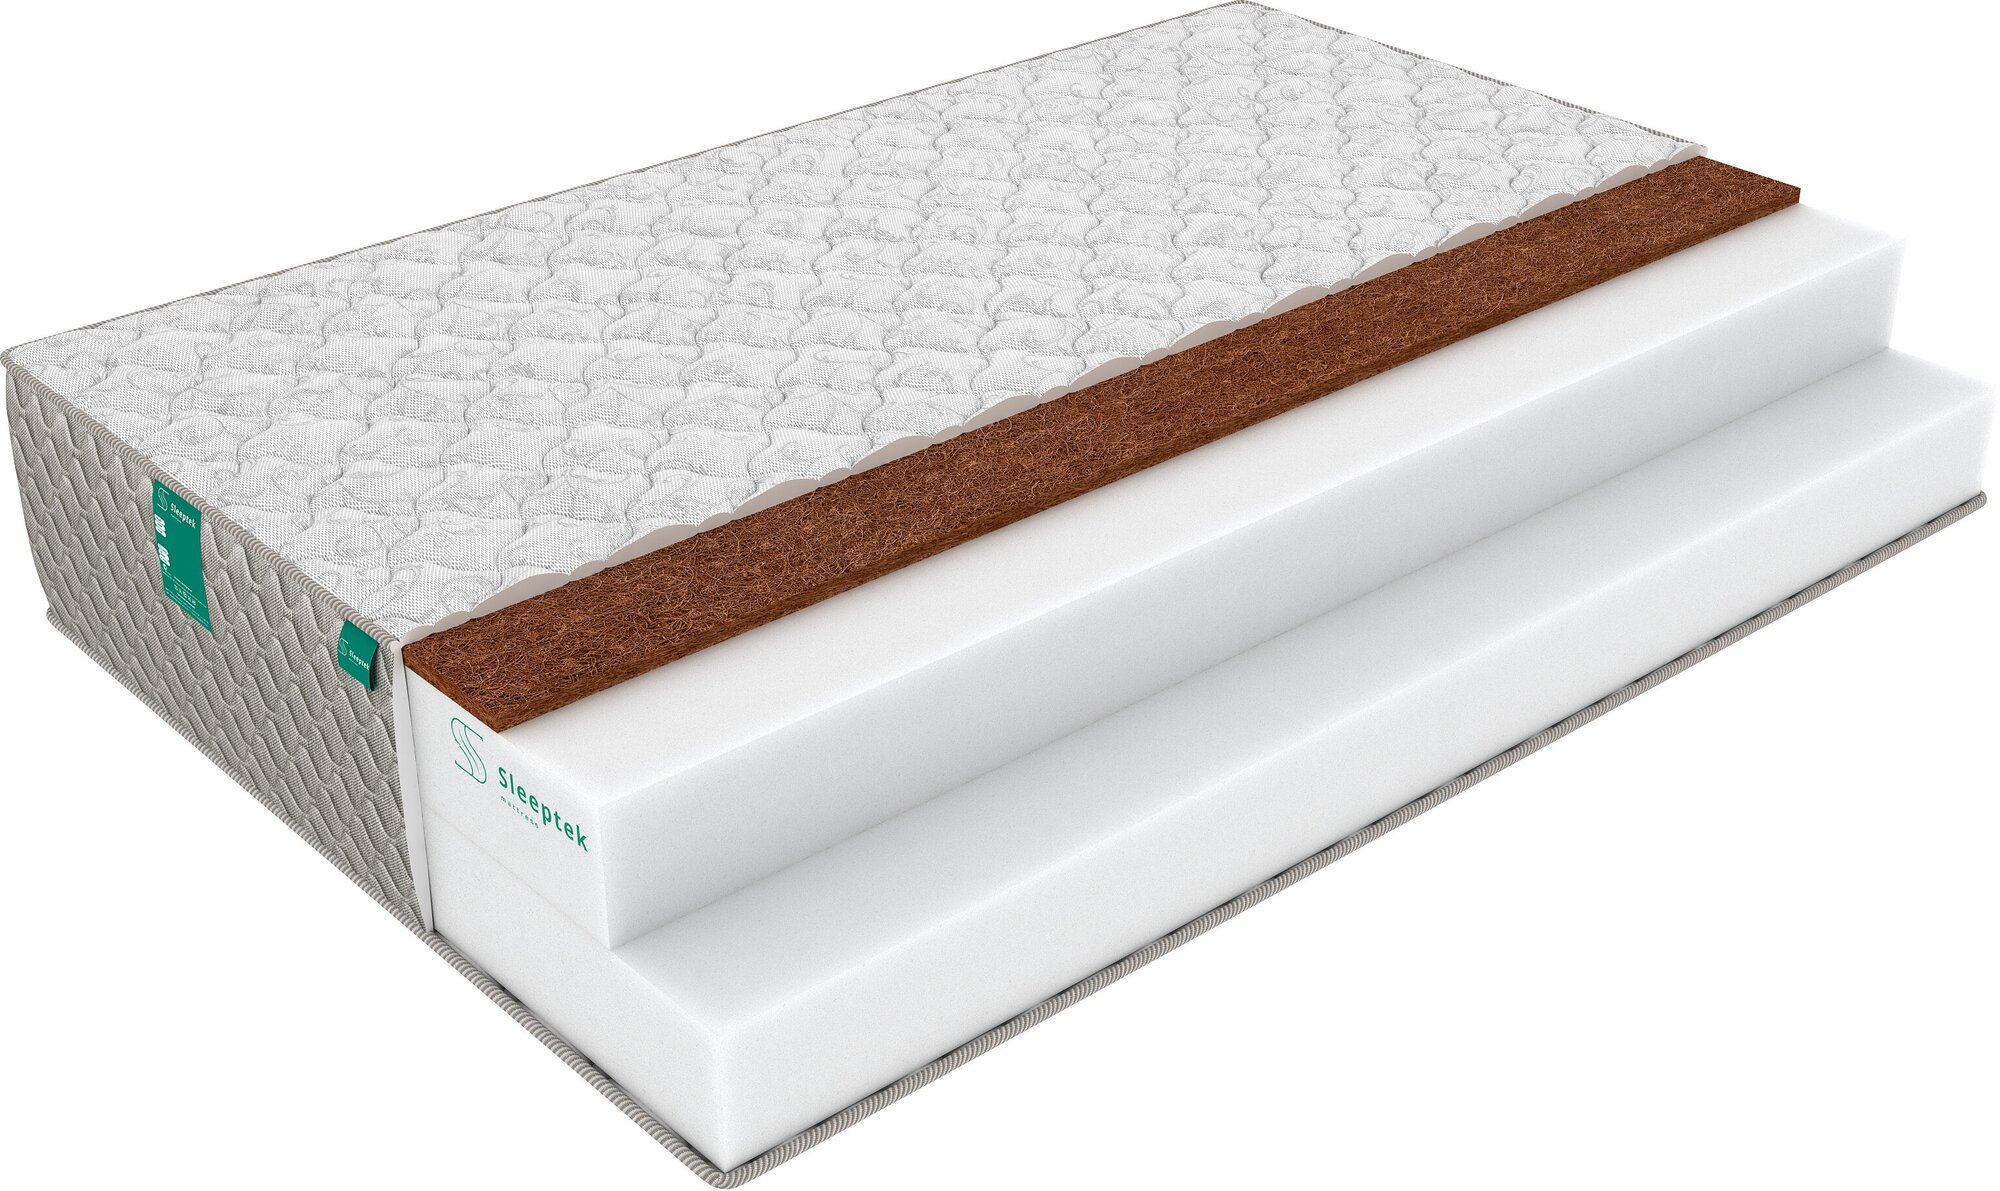  Sleeptek Roll SpecialFoam Cocos 29 (110 / 190)